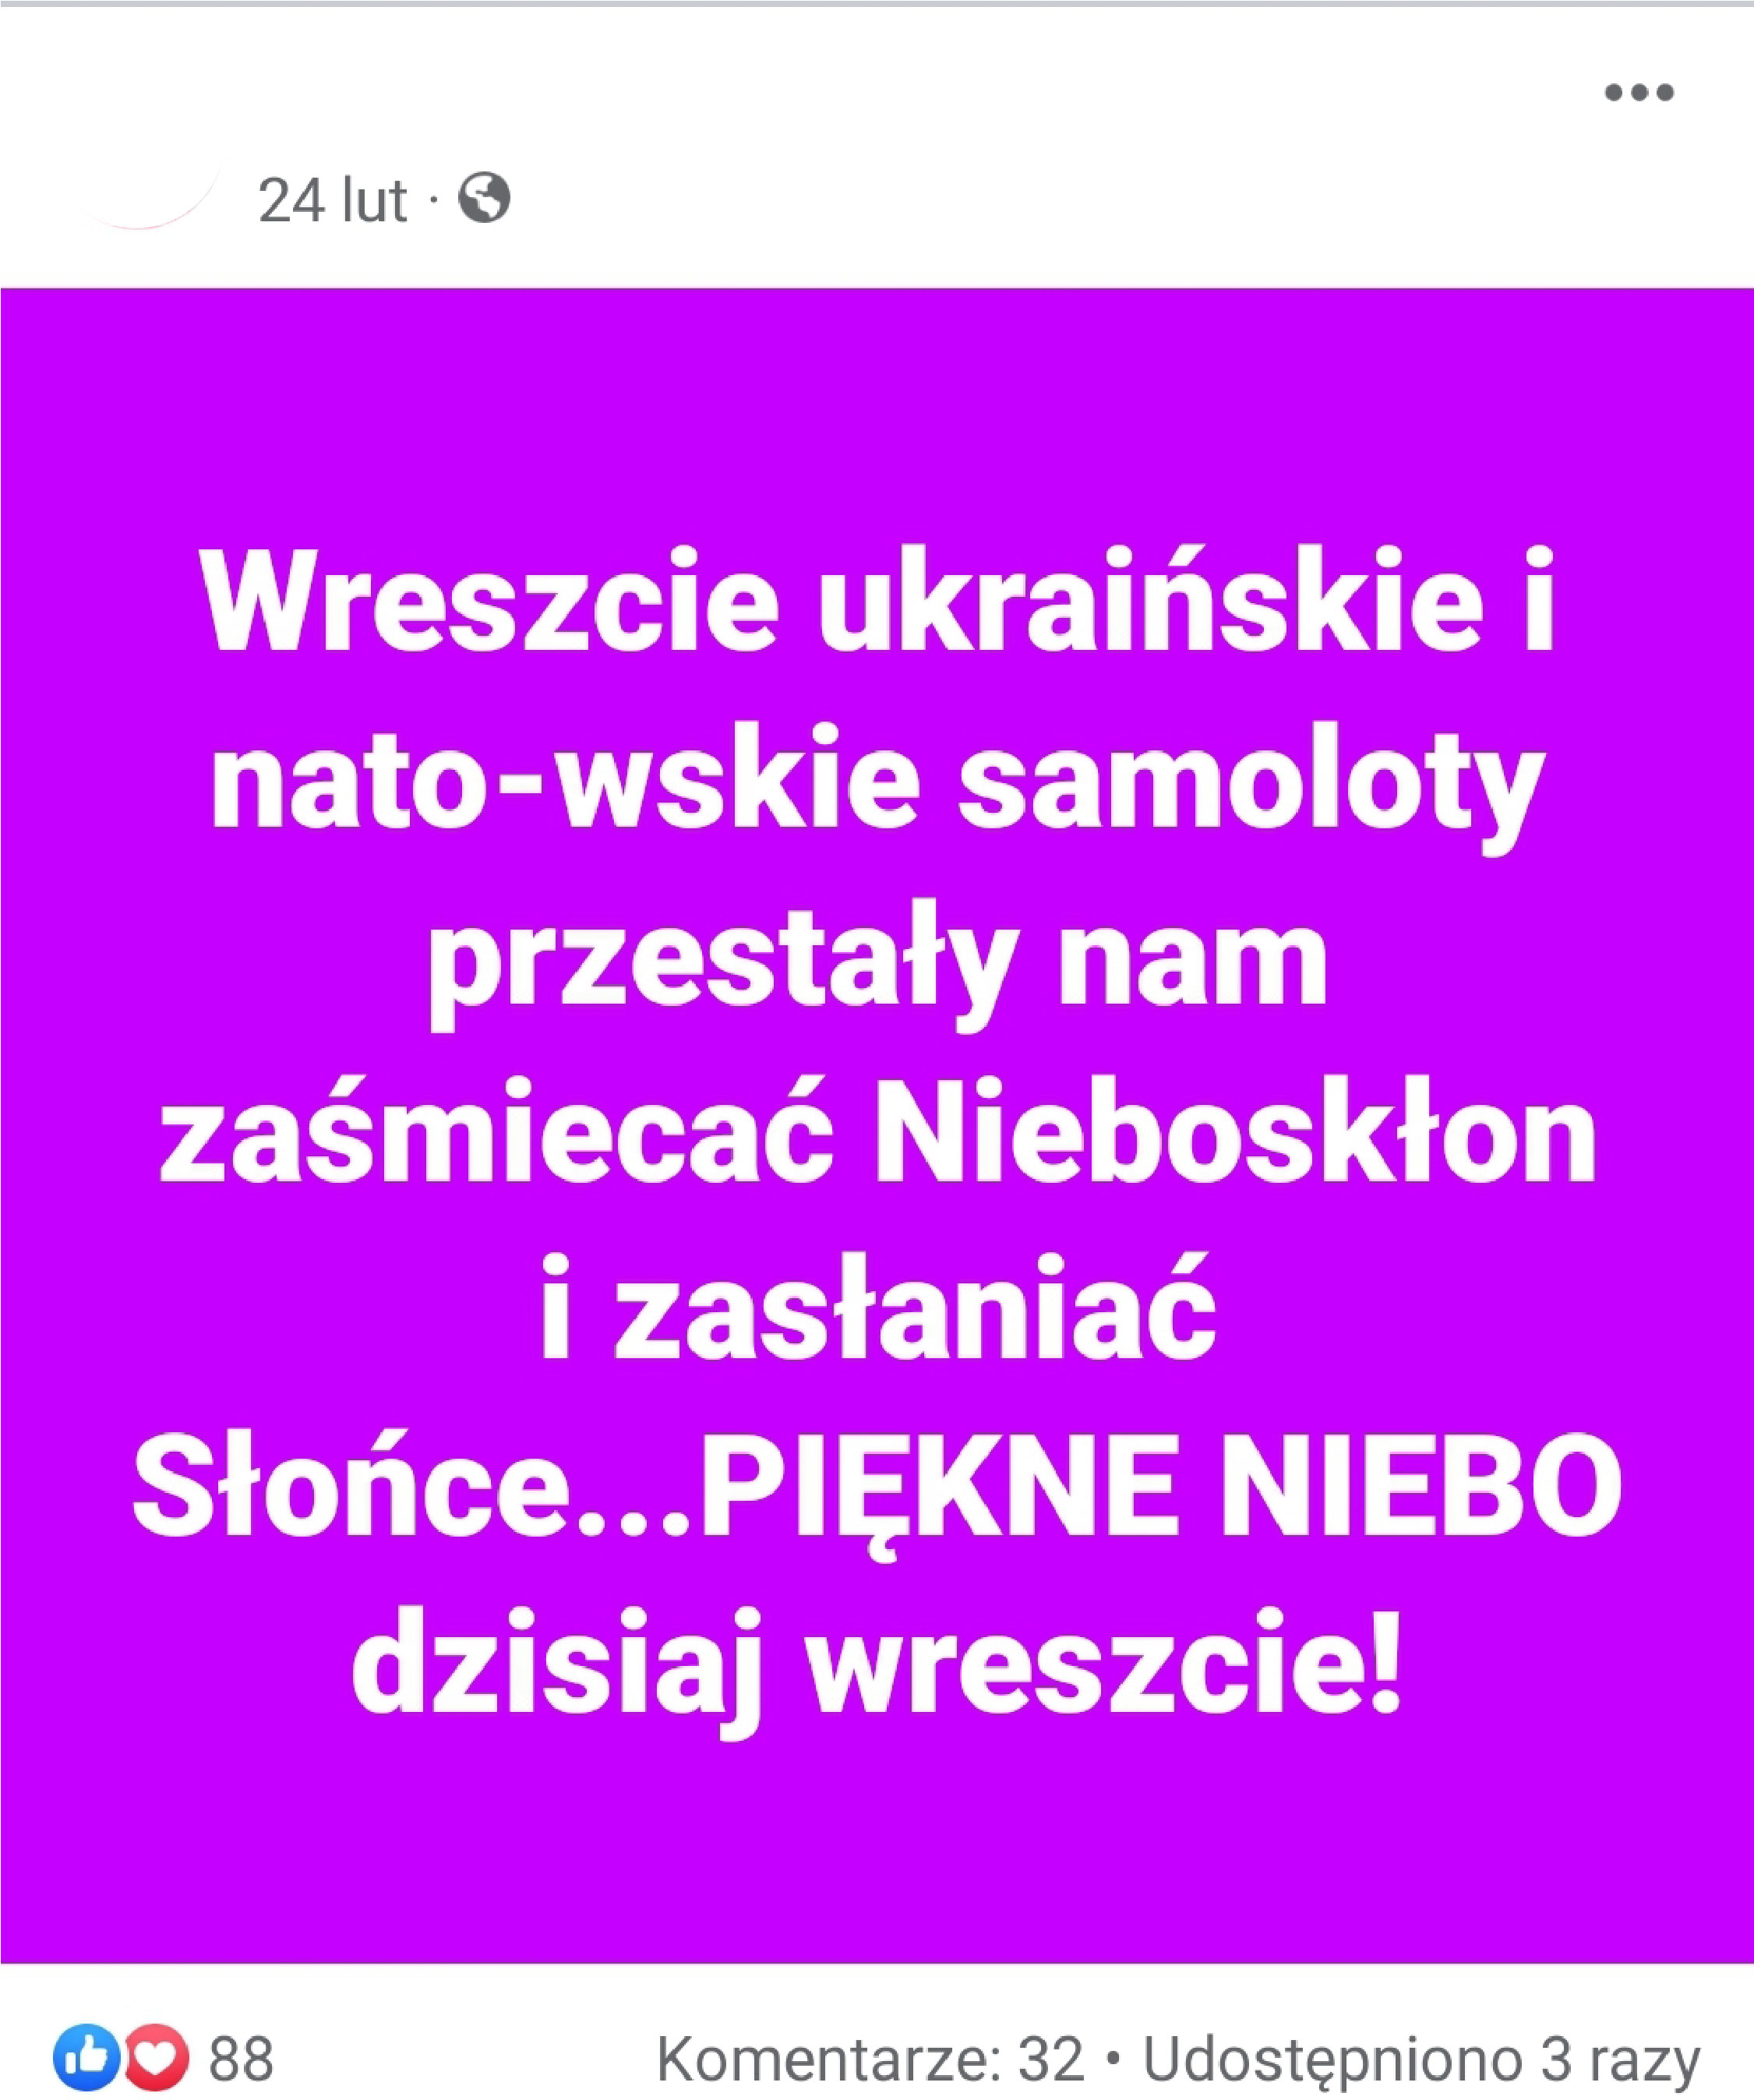 Zrzut ekranu jednego z użytkowników serwisu Facebook, który napisał, że natowskie samoloty przestały zatruwać niebo nad Polską i przestały zasłaniać Słońce. 